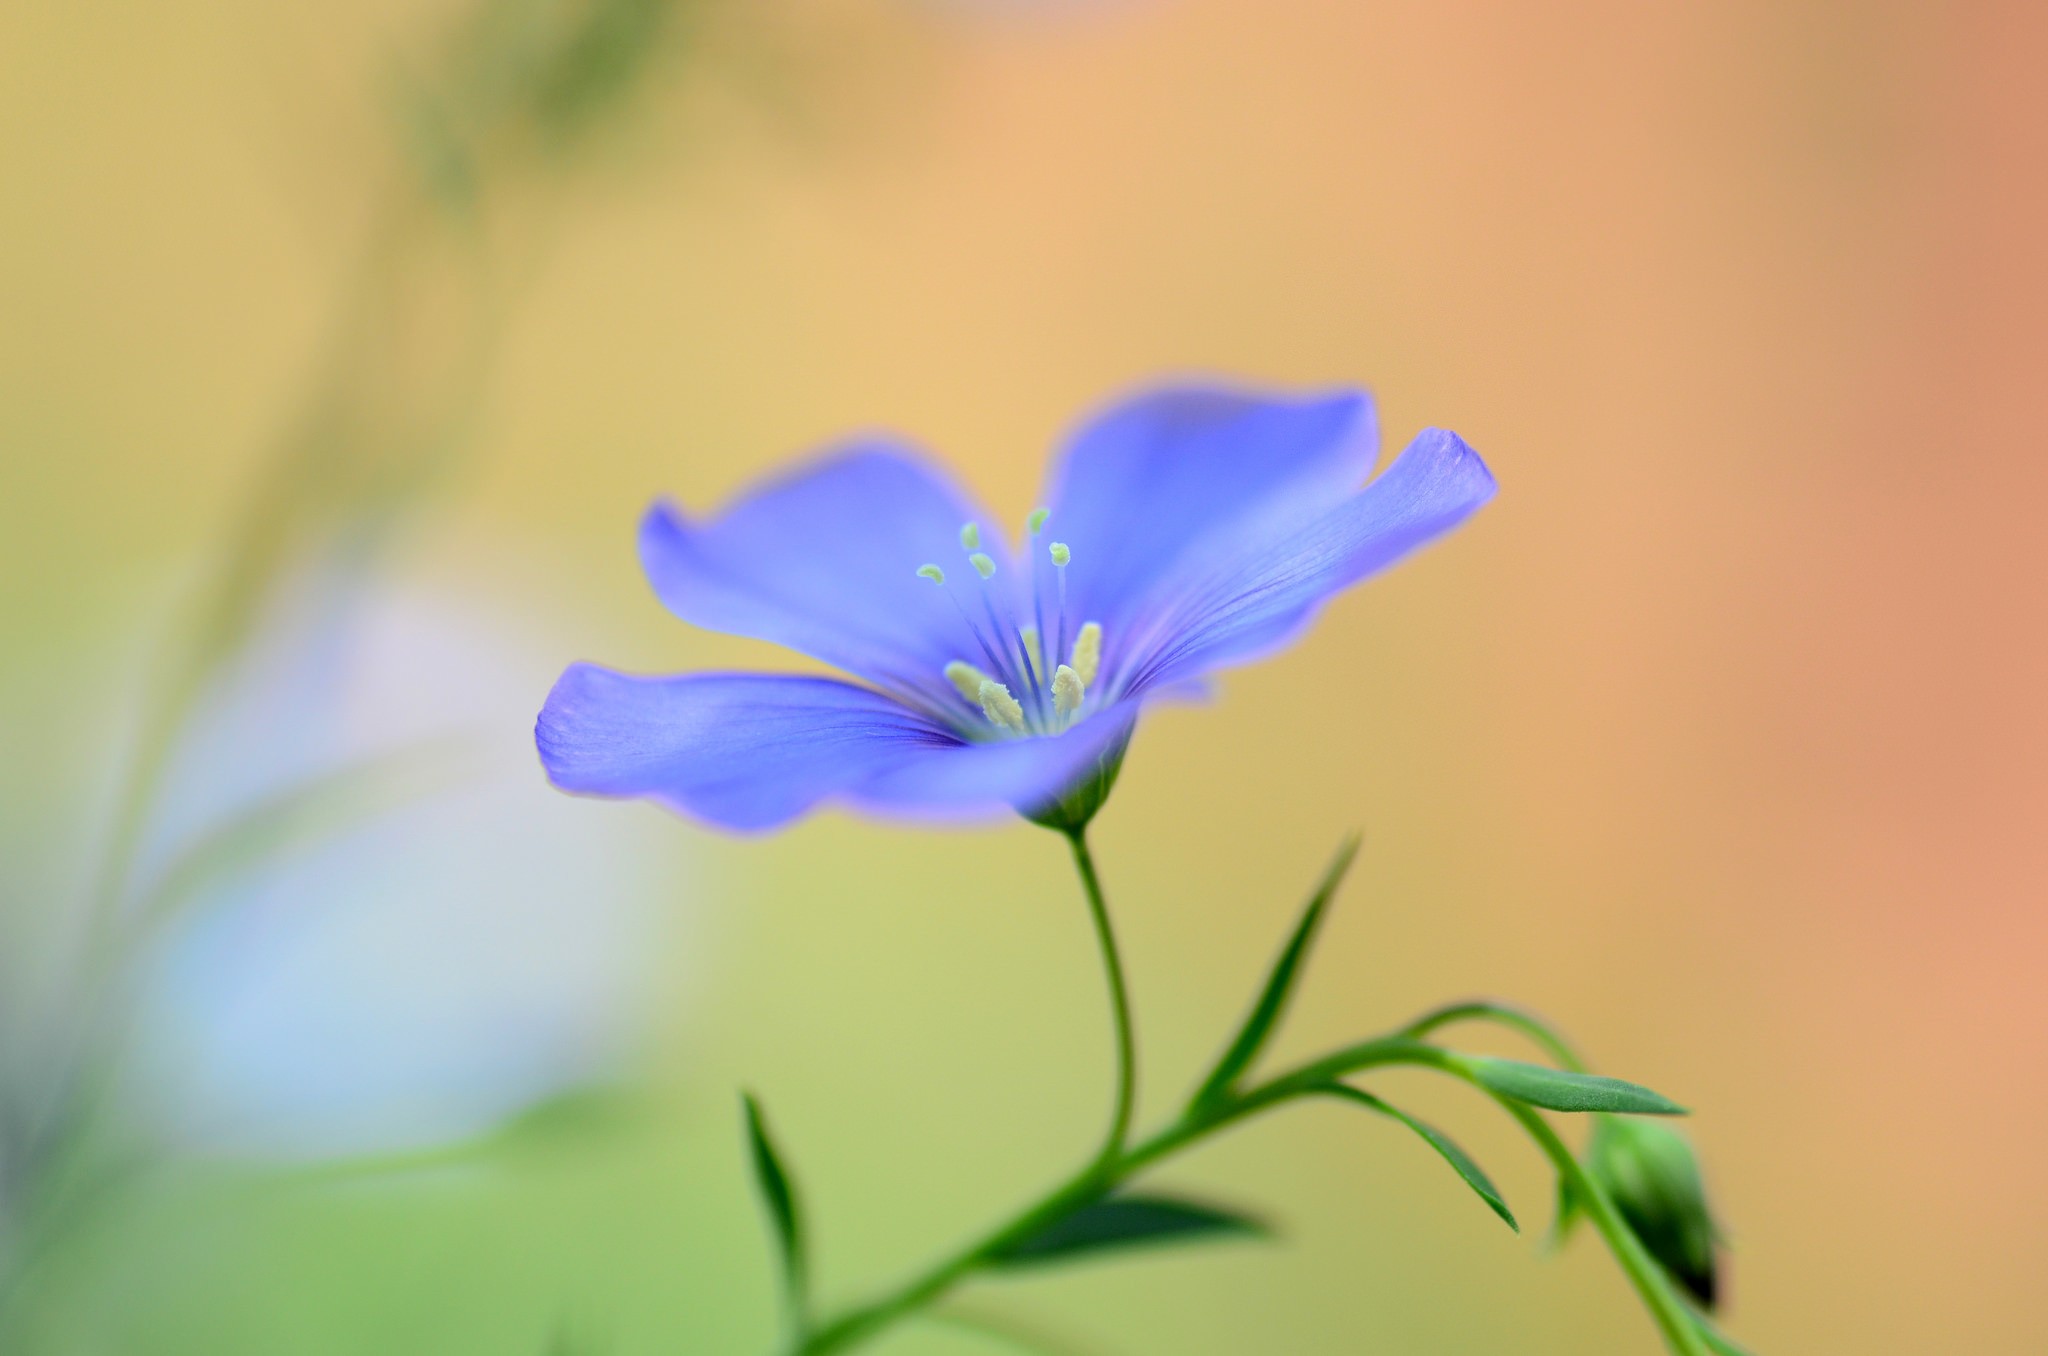 General 2048x1356 macro flowers plants blue flowers garden